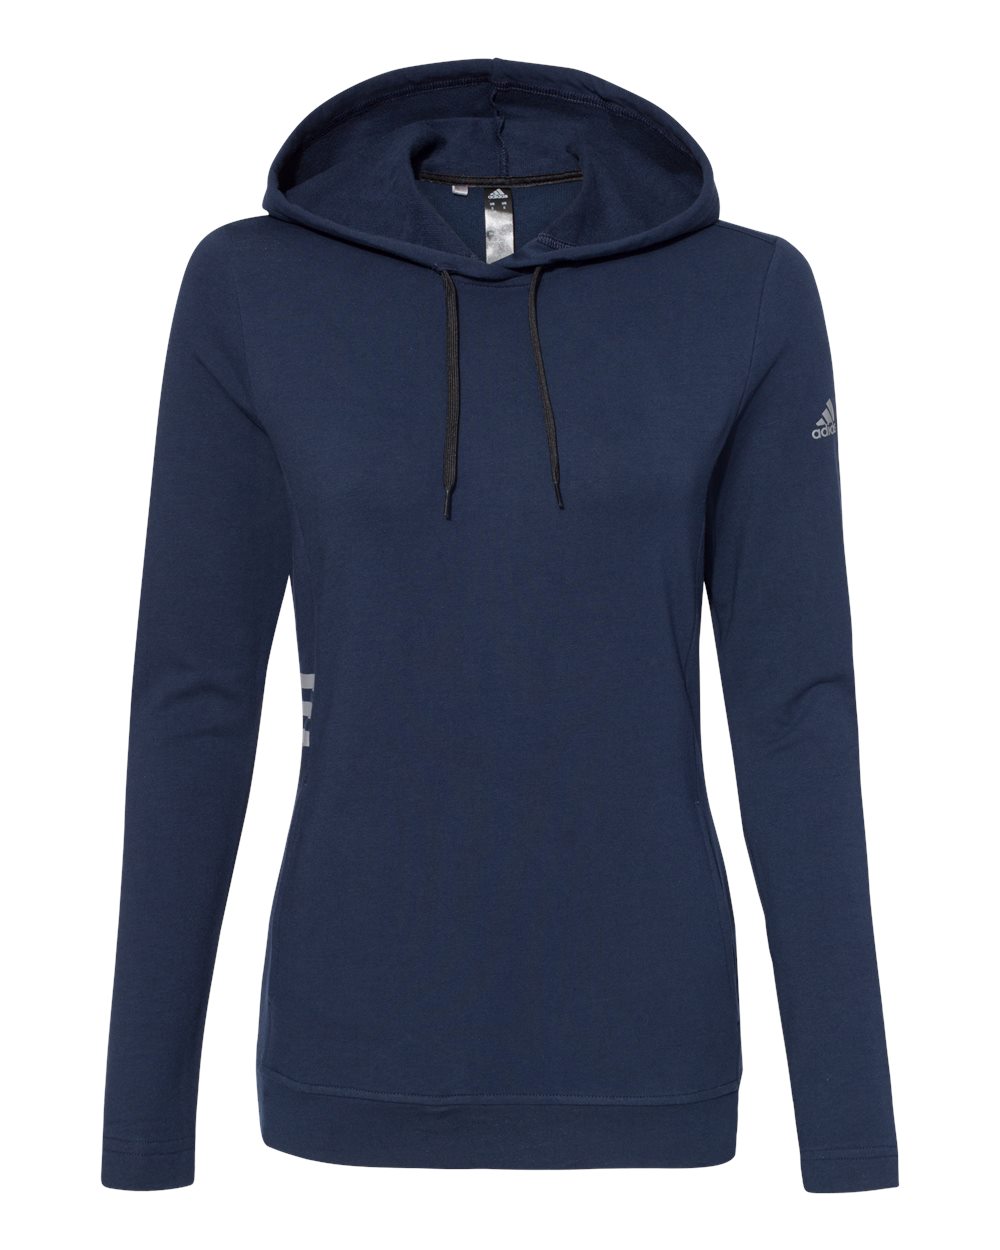 Adidas A451 - Women's Lightweight Hooded Sweatshirt